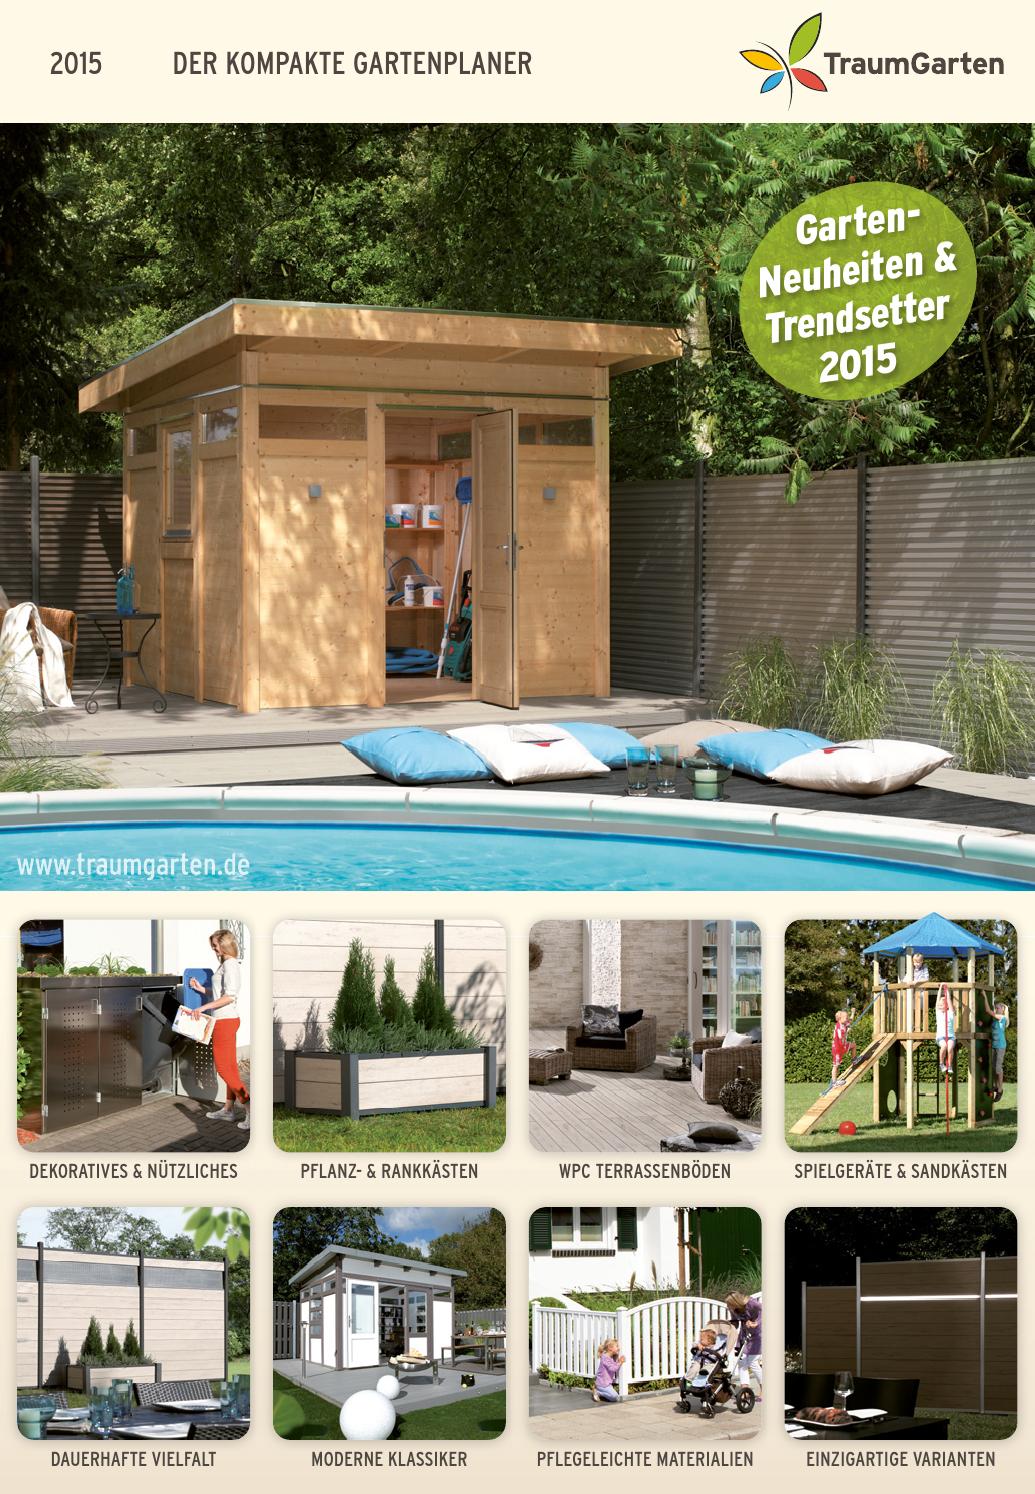 Gartenplaner Luxus Brügmann Der Kompakte Gartenplaner 2015 by Opus Marketing